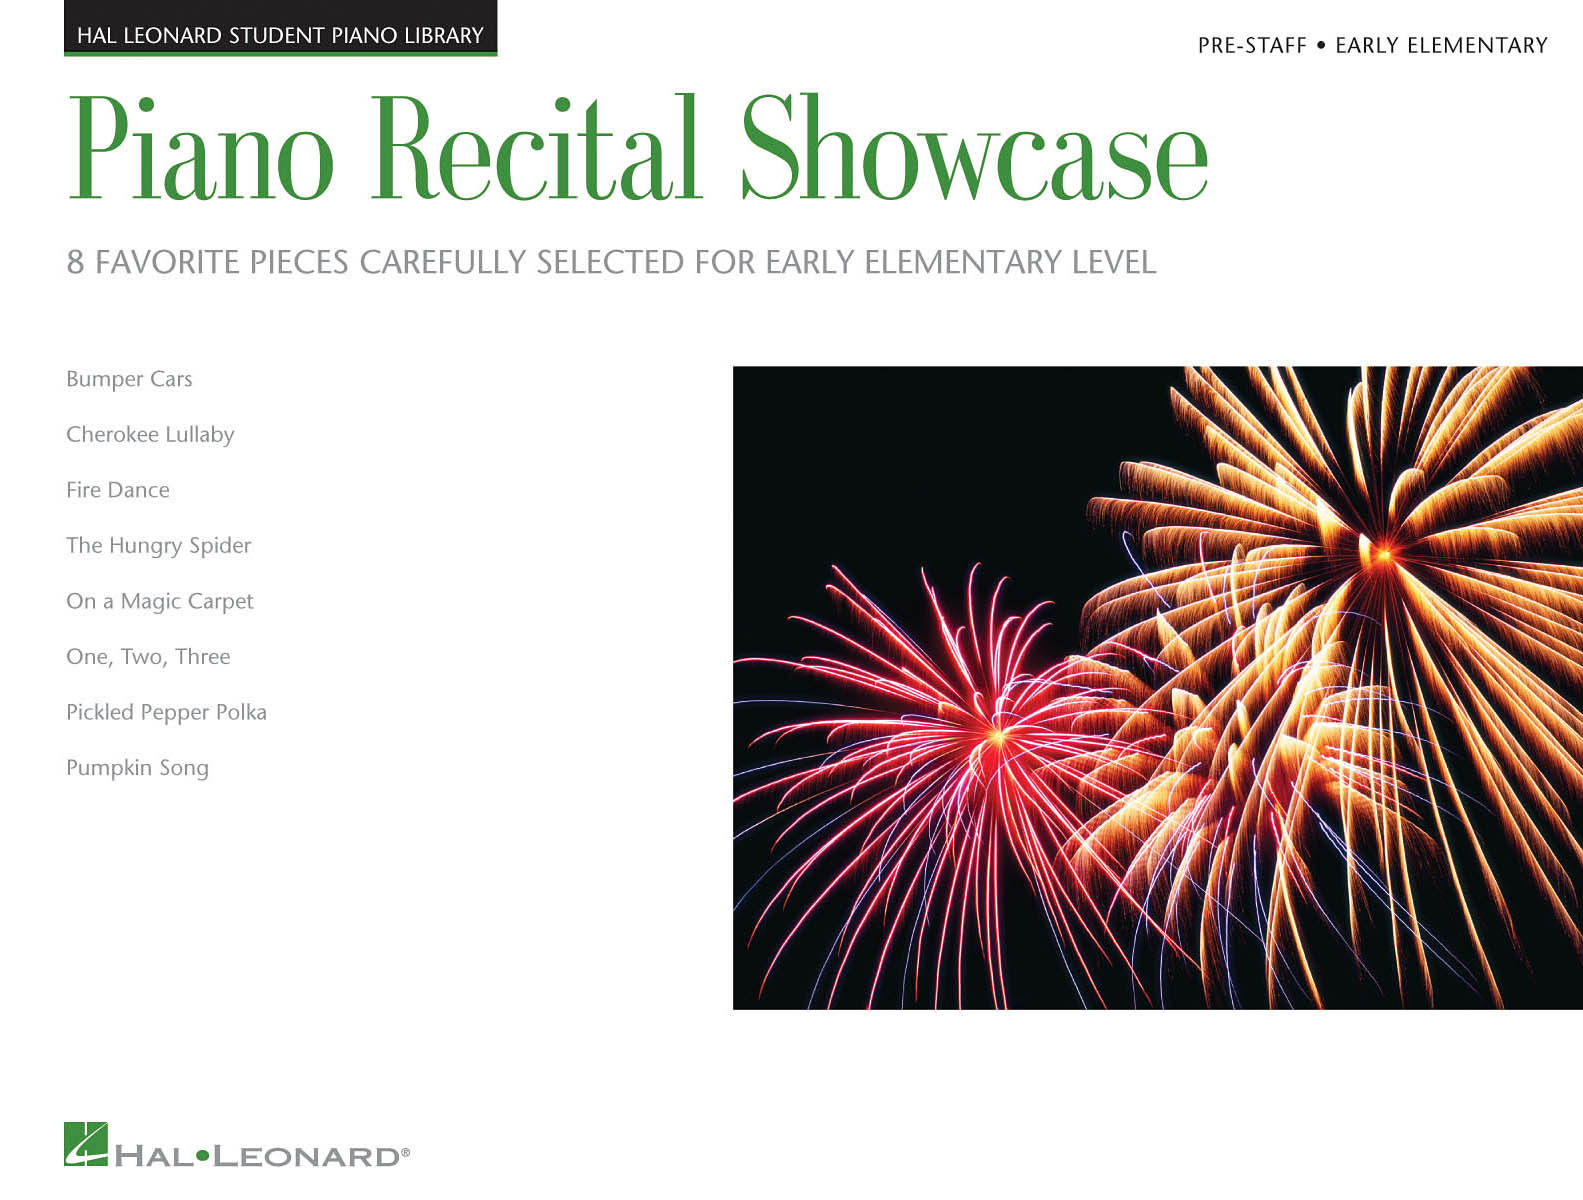 Piano Recital Showcase – Pre-Staff